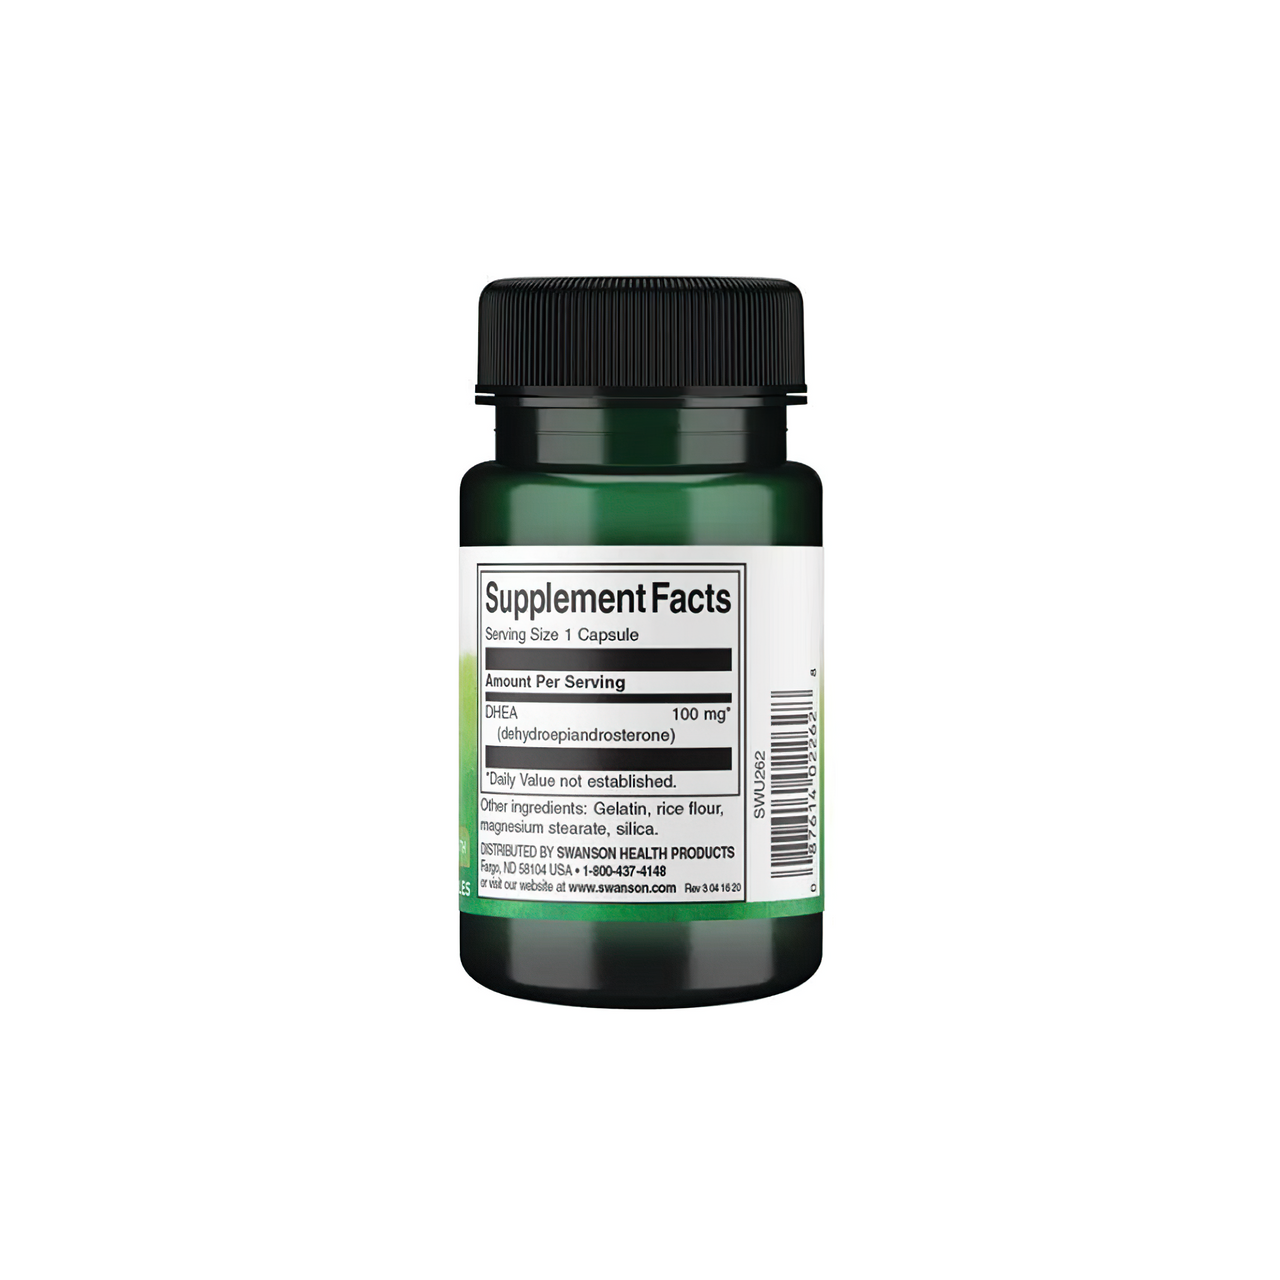 Um frasco de Swanson DHEA - 100 mg 60 capsules supplement sobre um fundo branco.